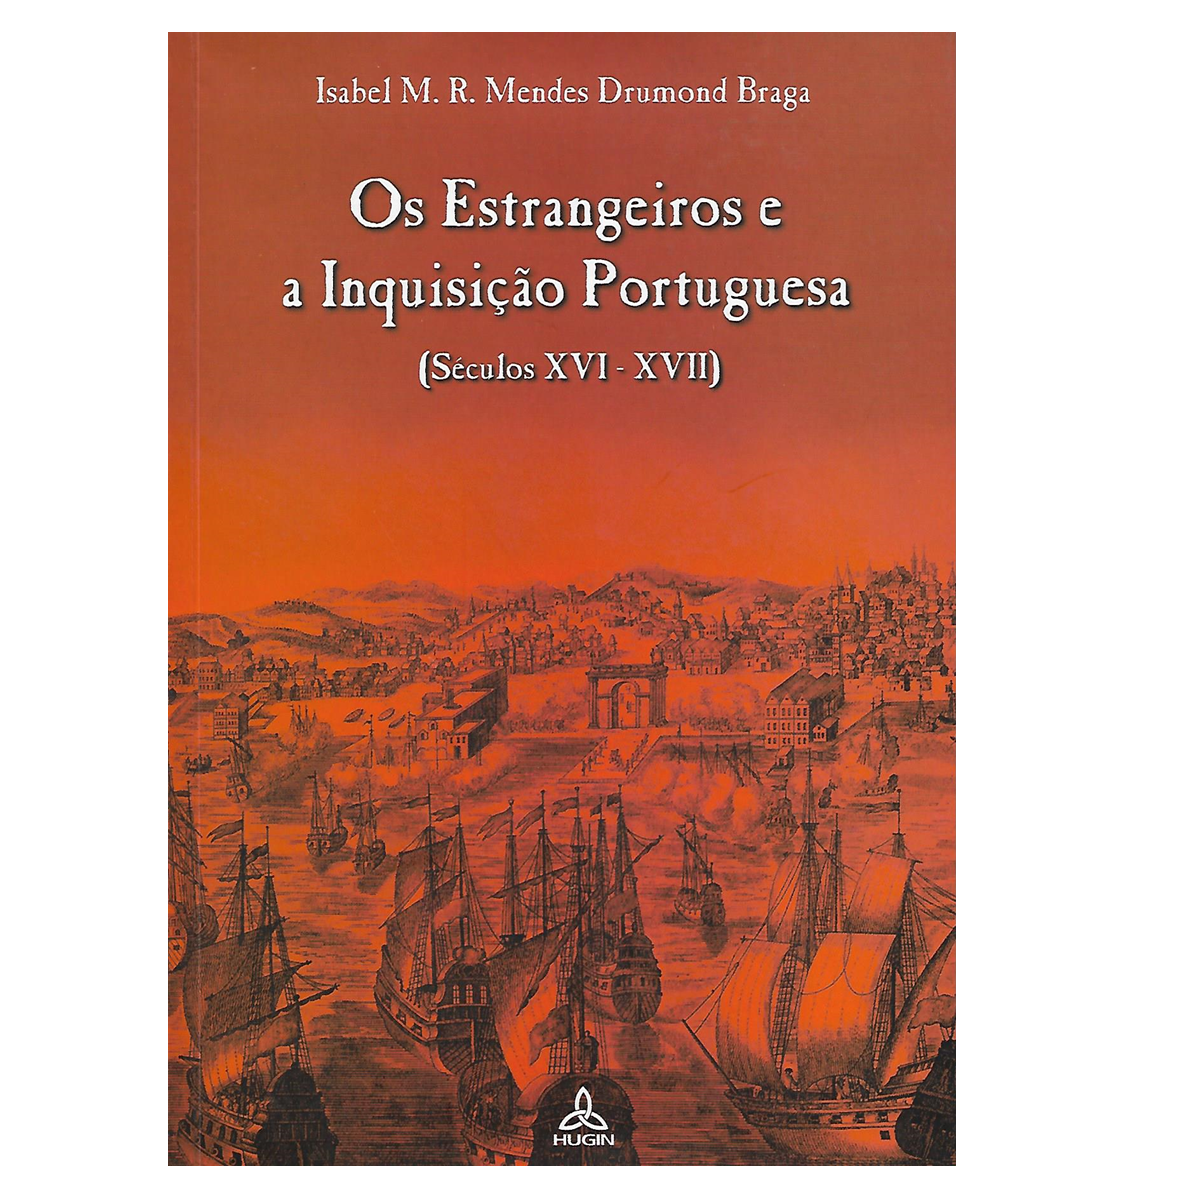 Os Estrangeiros e a Inquisição Portuguesa (Séculos XVI-XVII).